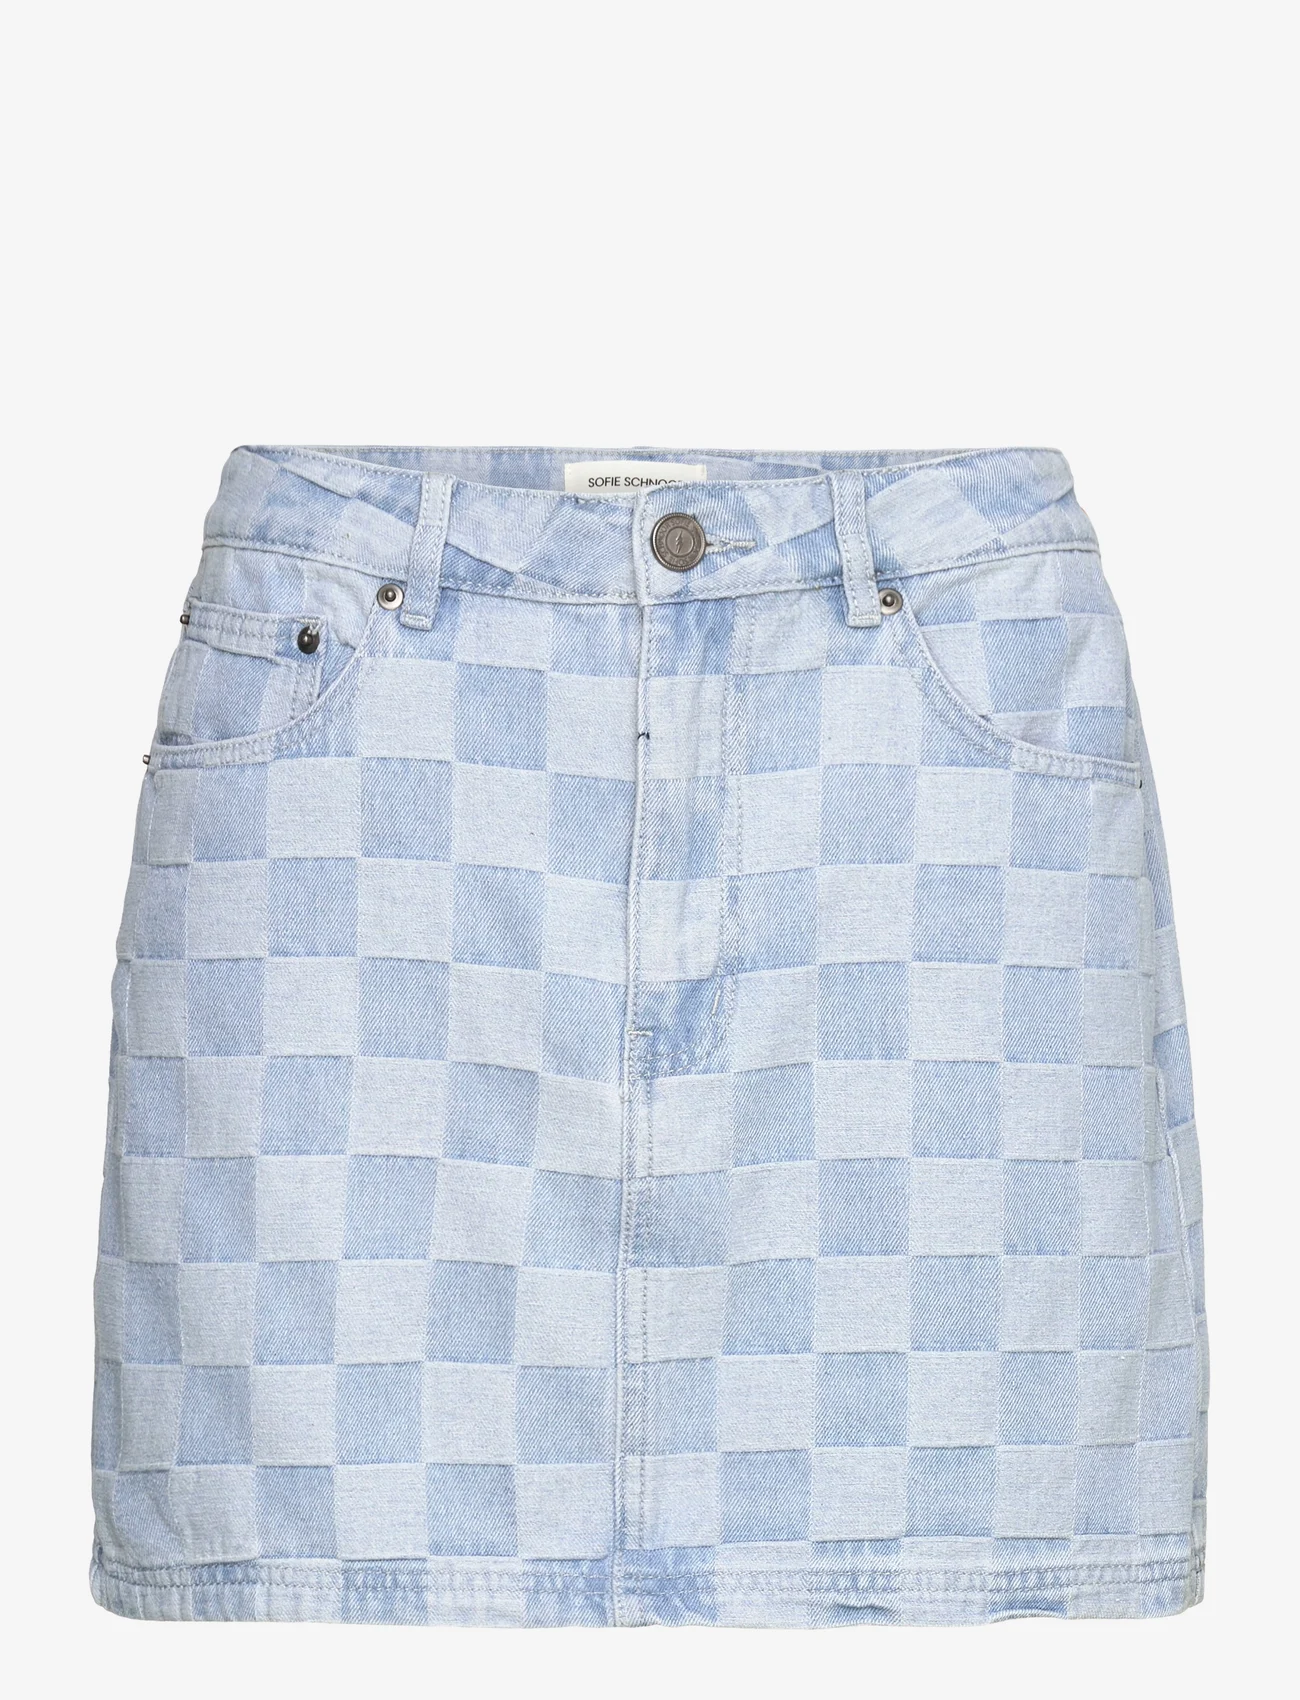 Sofie Schnoor - Skirt - korte nederdele - light denim blue - 0